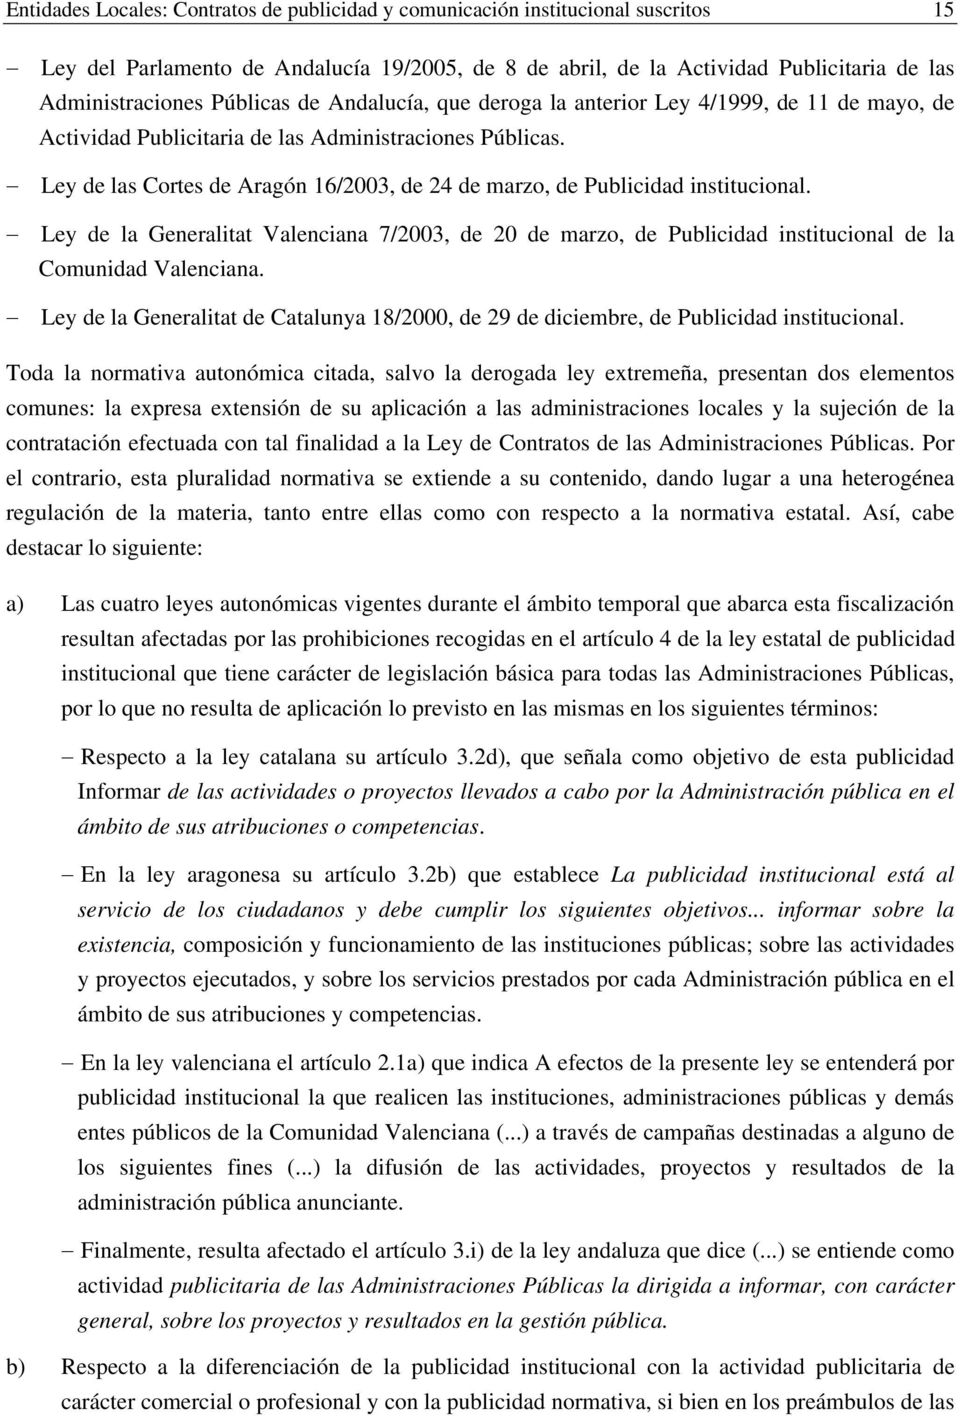 Ley de las Cortes de Aragón 16/2003, de 24 de marzo, de Publicidad institucional. Ley de la Generalitat Valenciana 7/2003, de 20 de marzo, de Publicidad institucional de la Comunidad Valenciana.